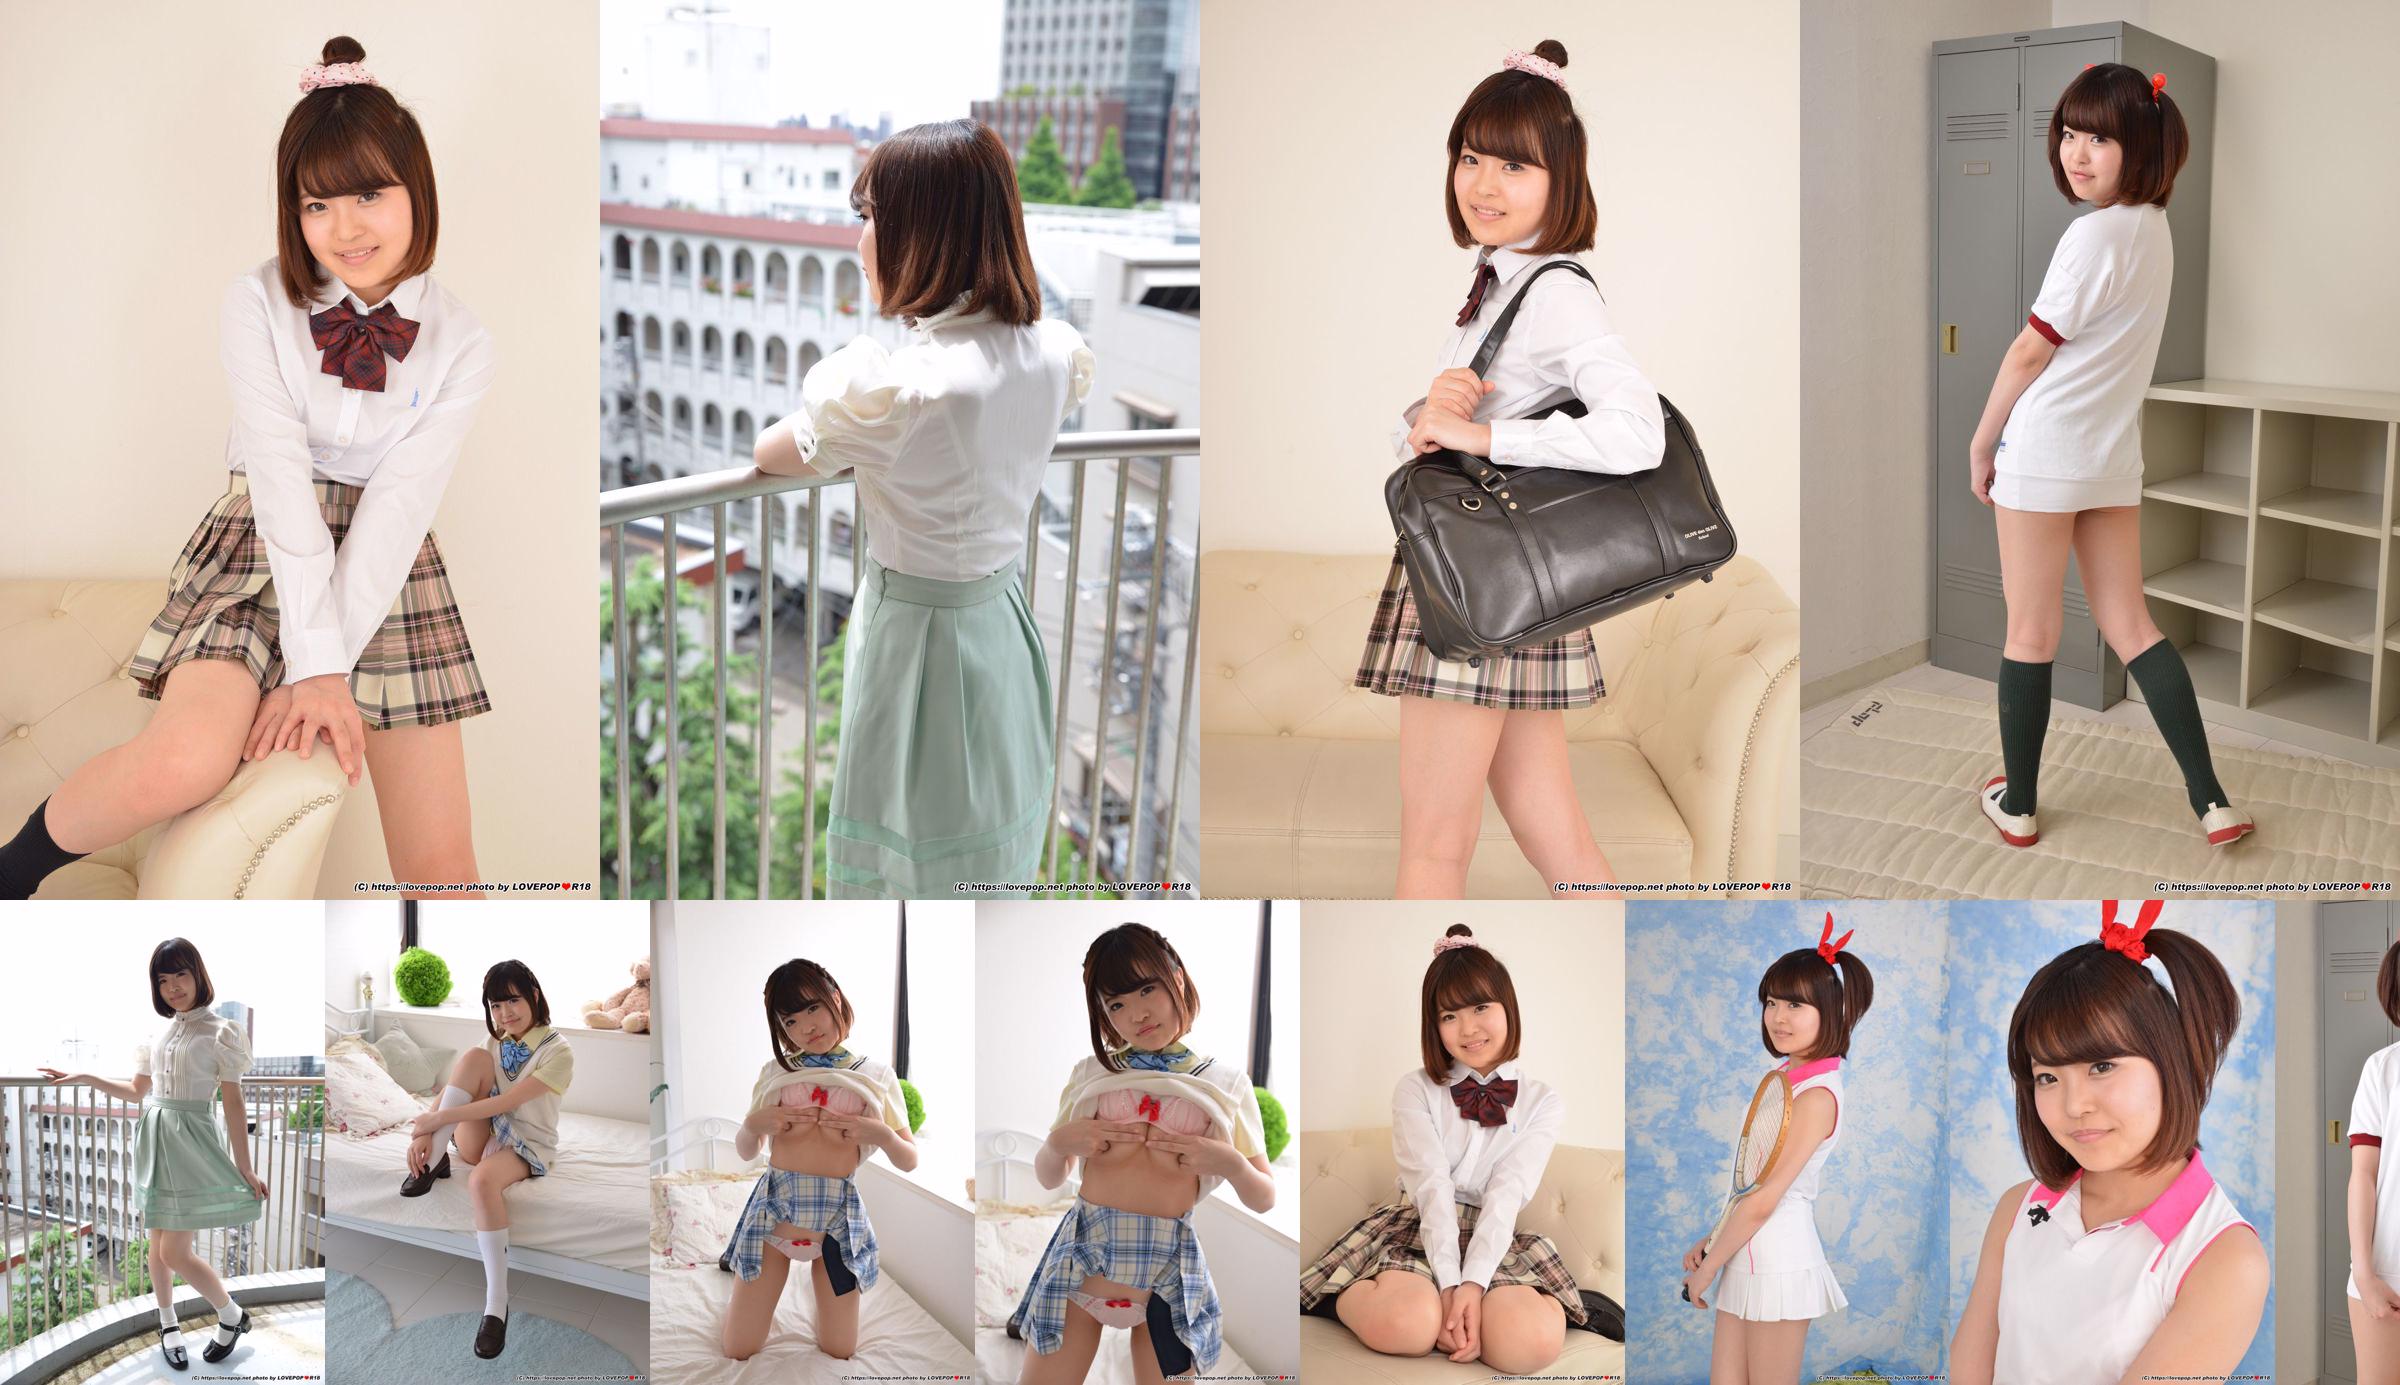 [LOVEPOP] Natsuki Minami Natsuki Minami / Natsuki Minami Photoset 03 No.6a6a5e Page 4